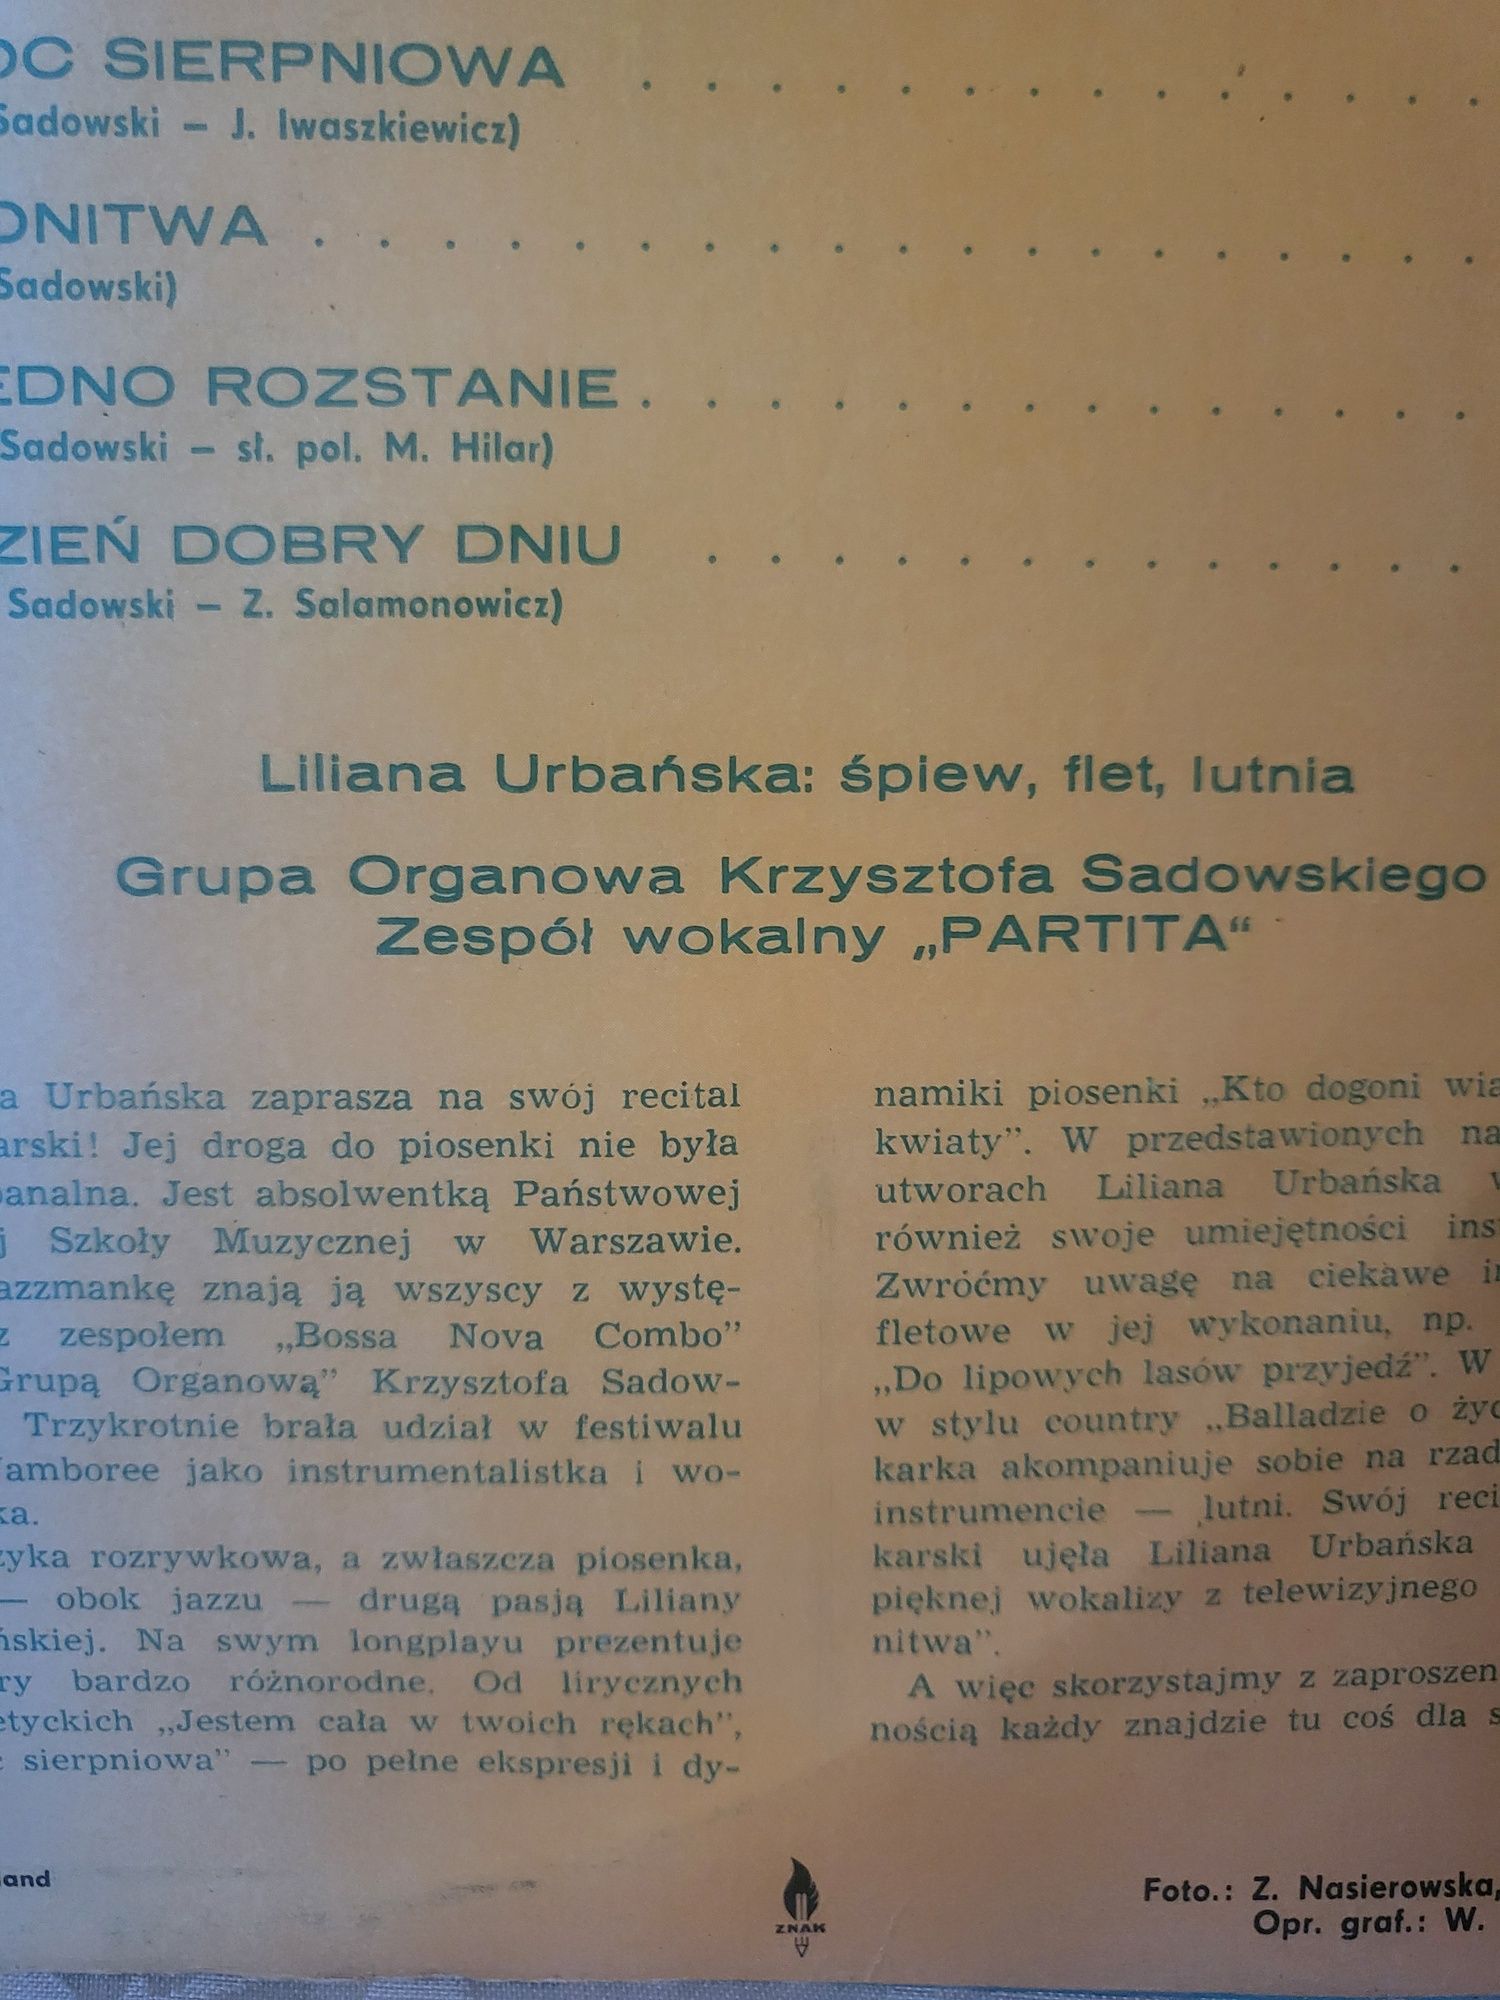 Nieużywana, nieodtwarzana płyta vinyl LILIANNA URBANSKA -Pronit 74 r